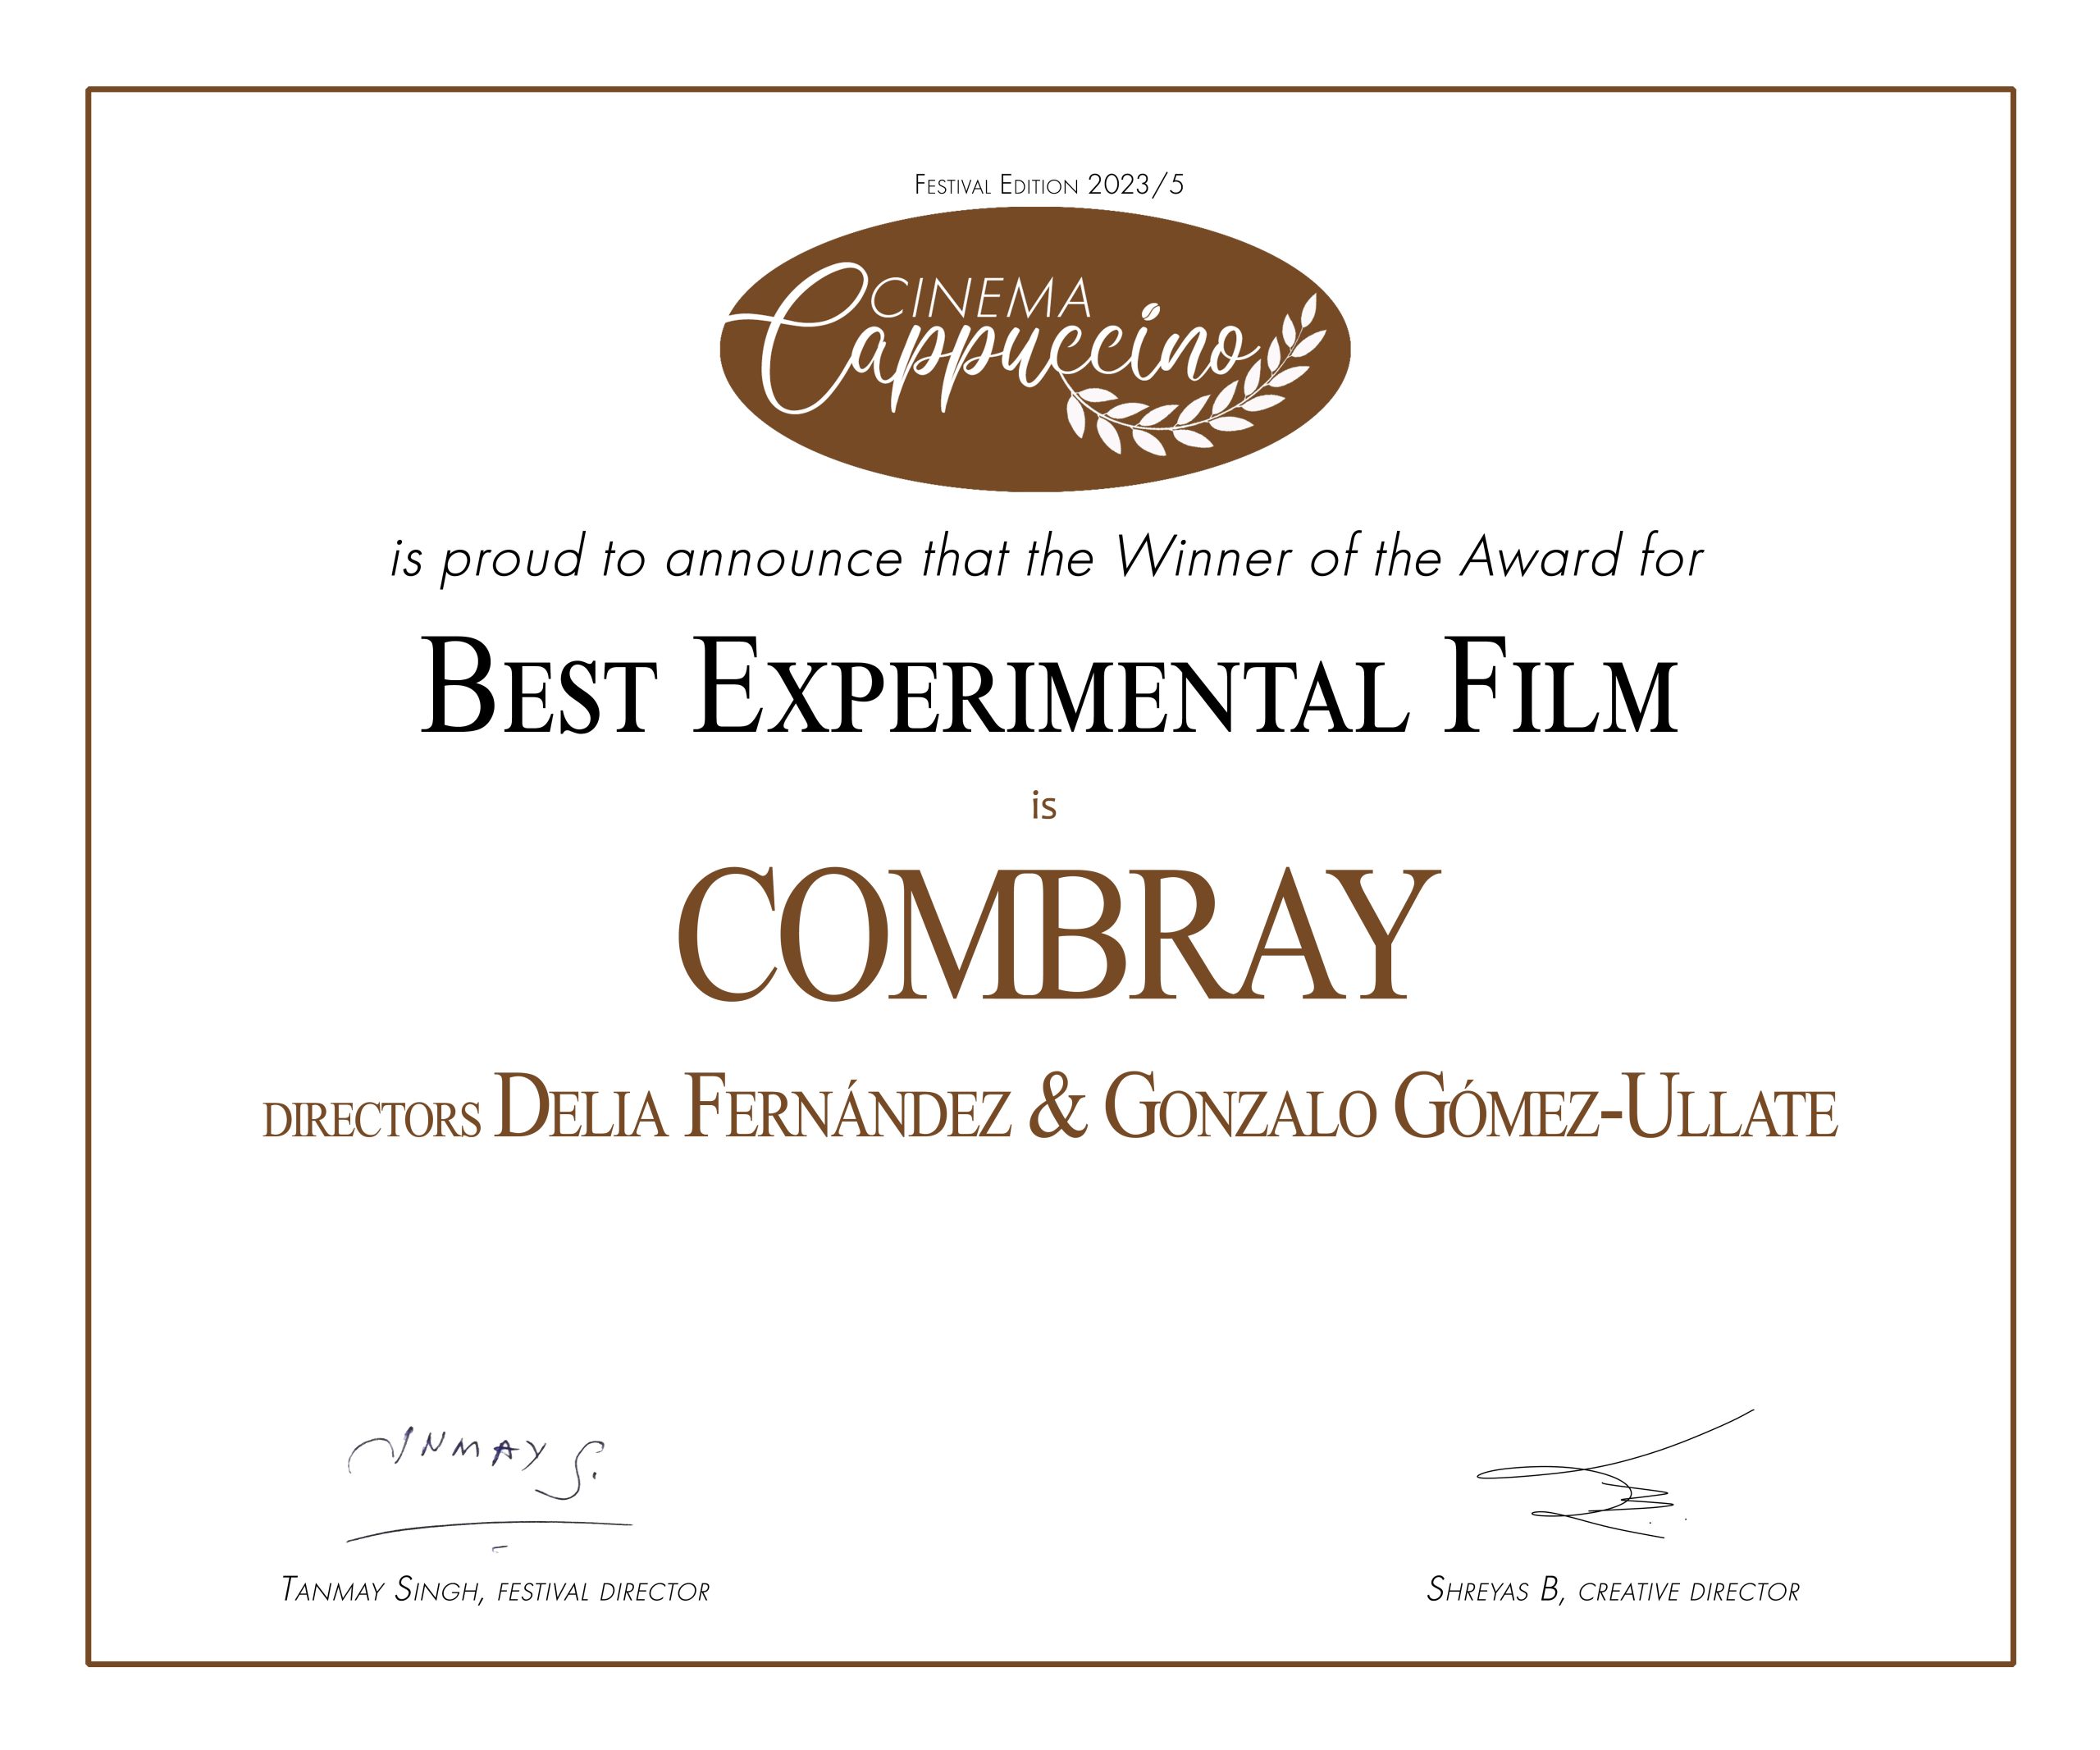 Combray premiado en Cinema Cappuccino